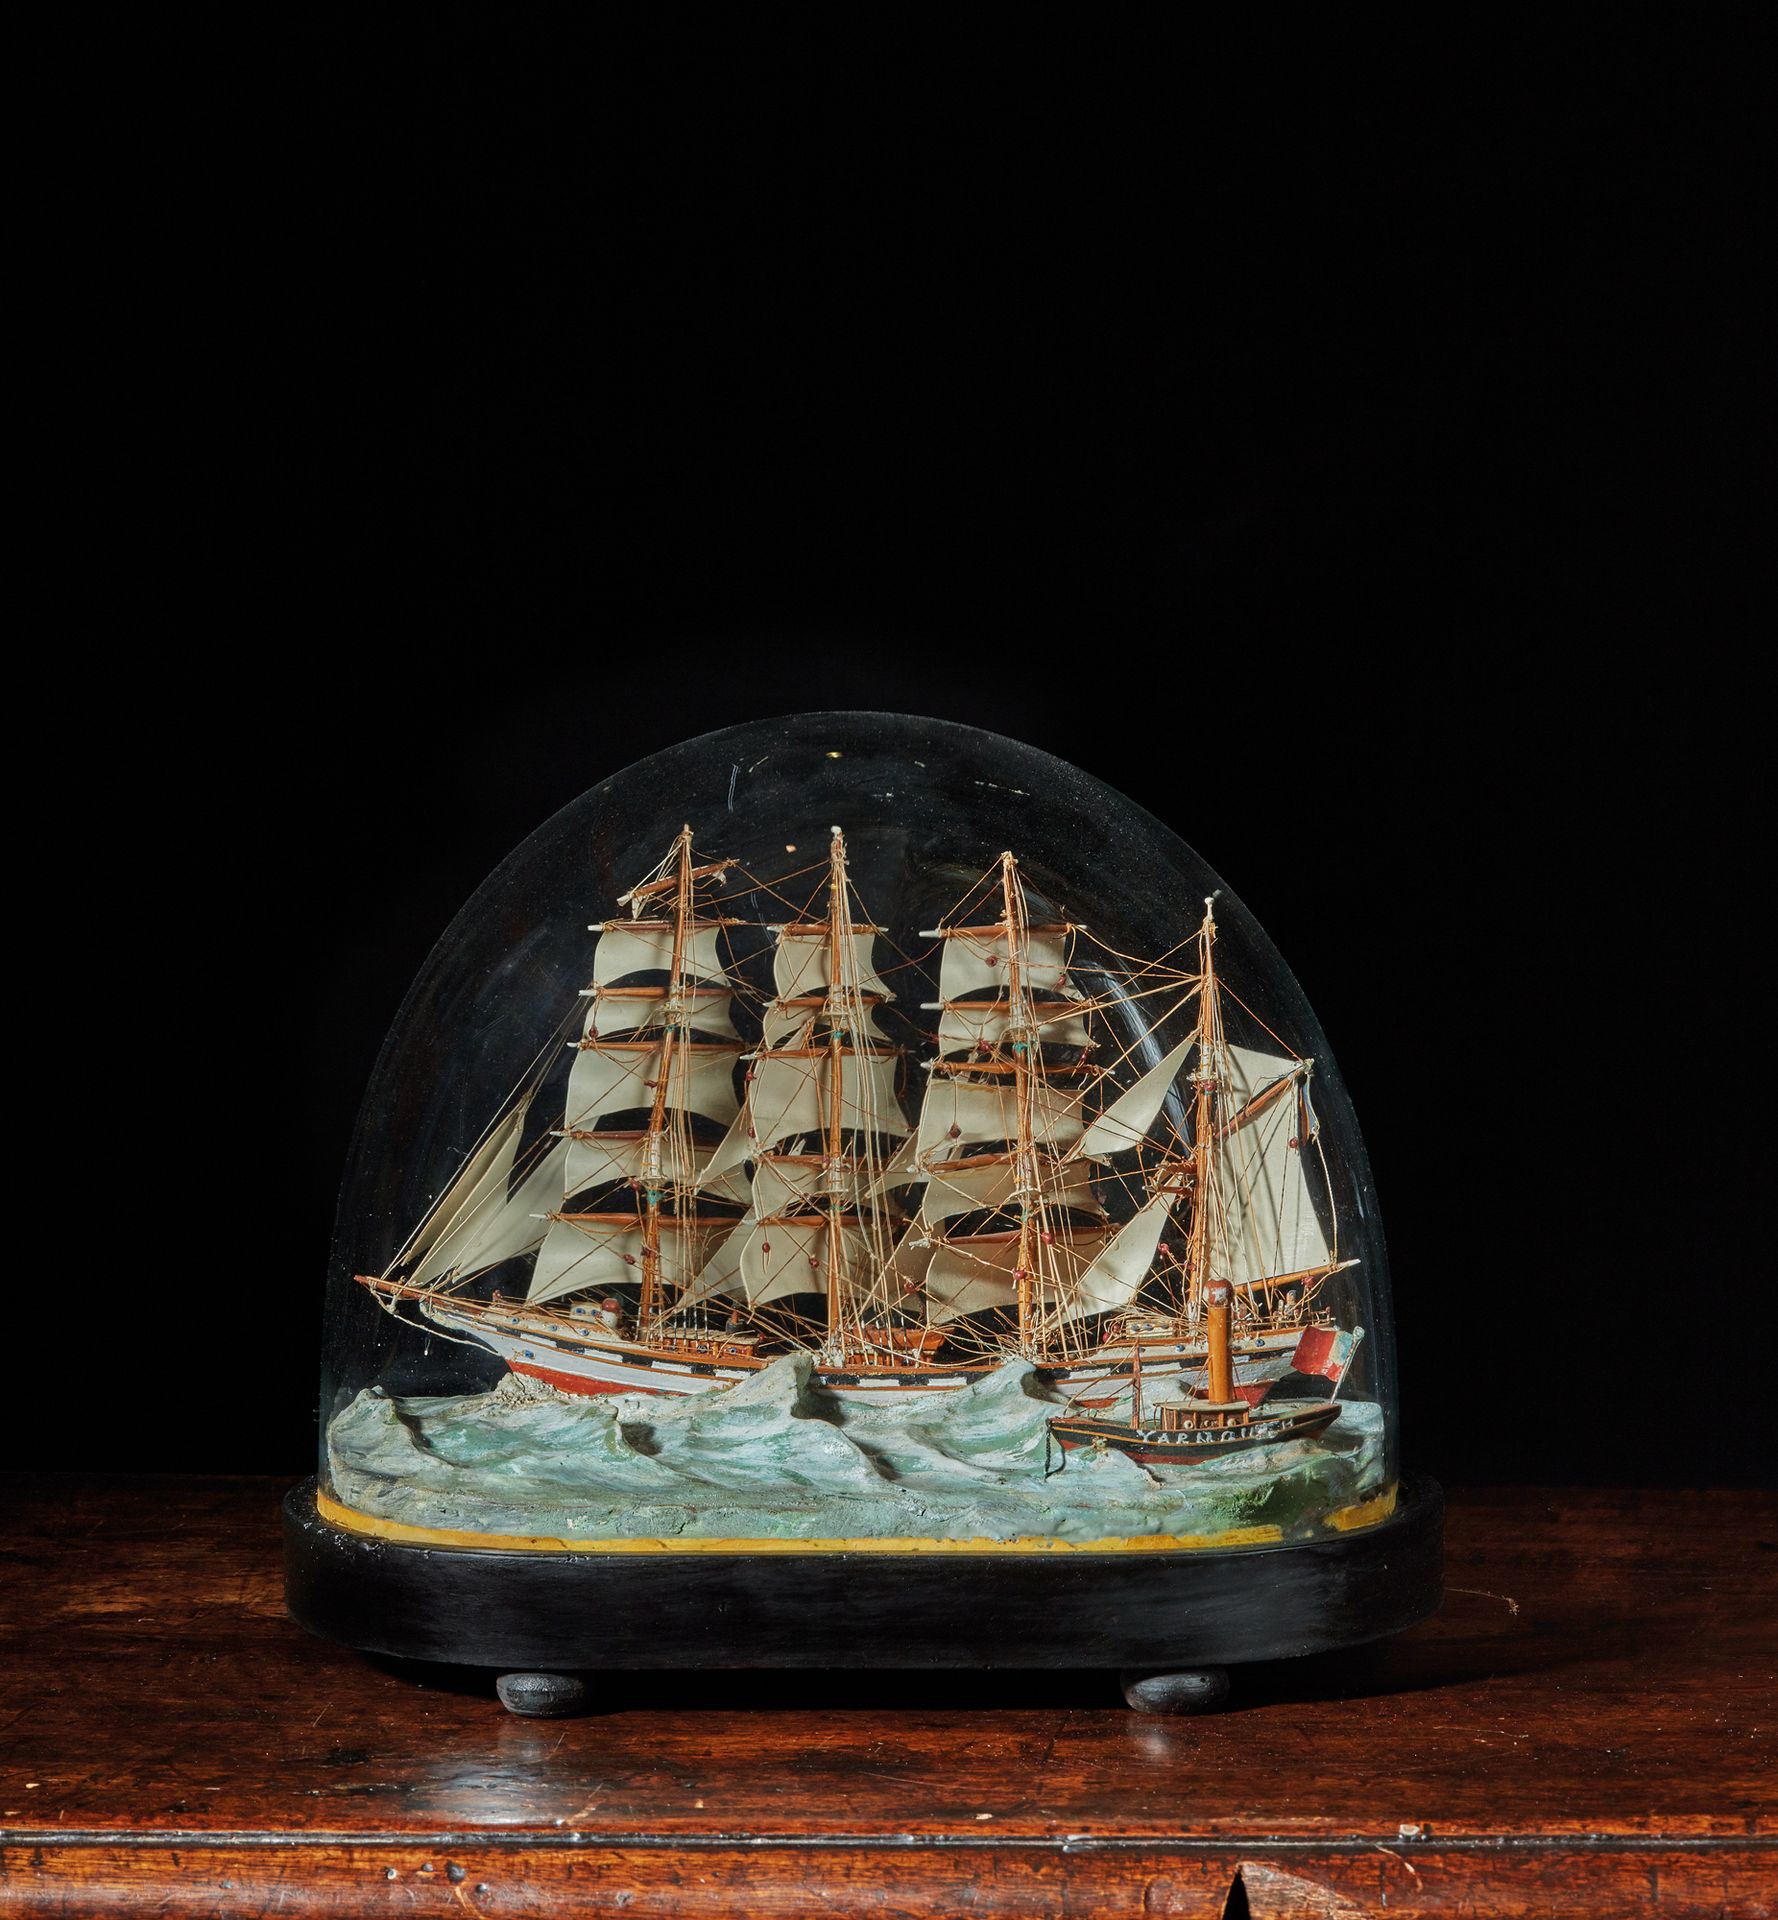 Null Diorama
Modell einer Viermastbark der Cie.
BORDES, die mit vollen Segeln am&hellip;